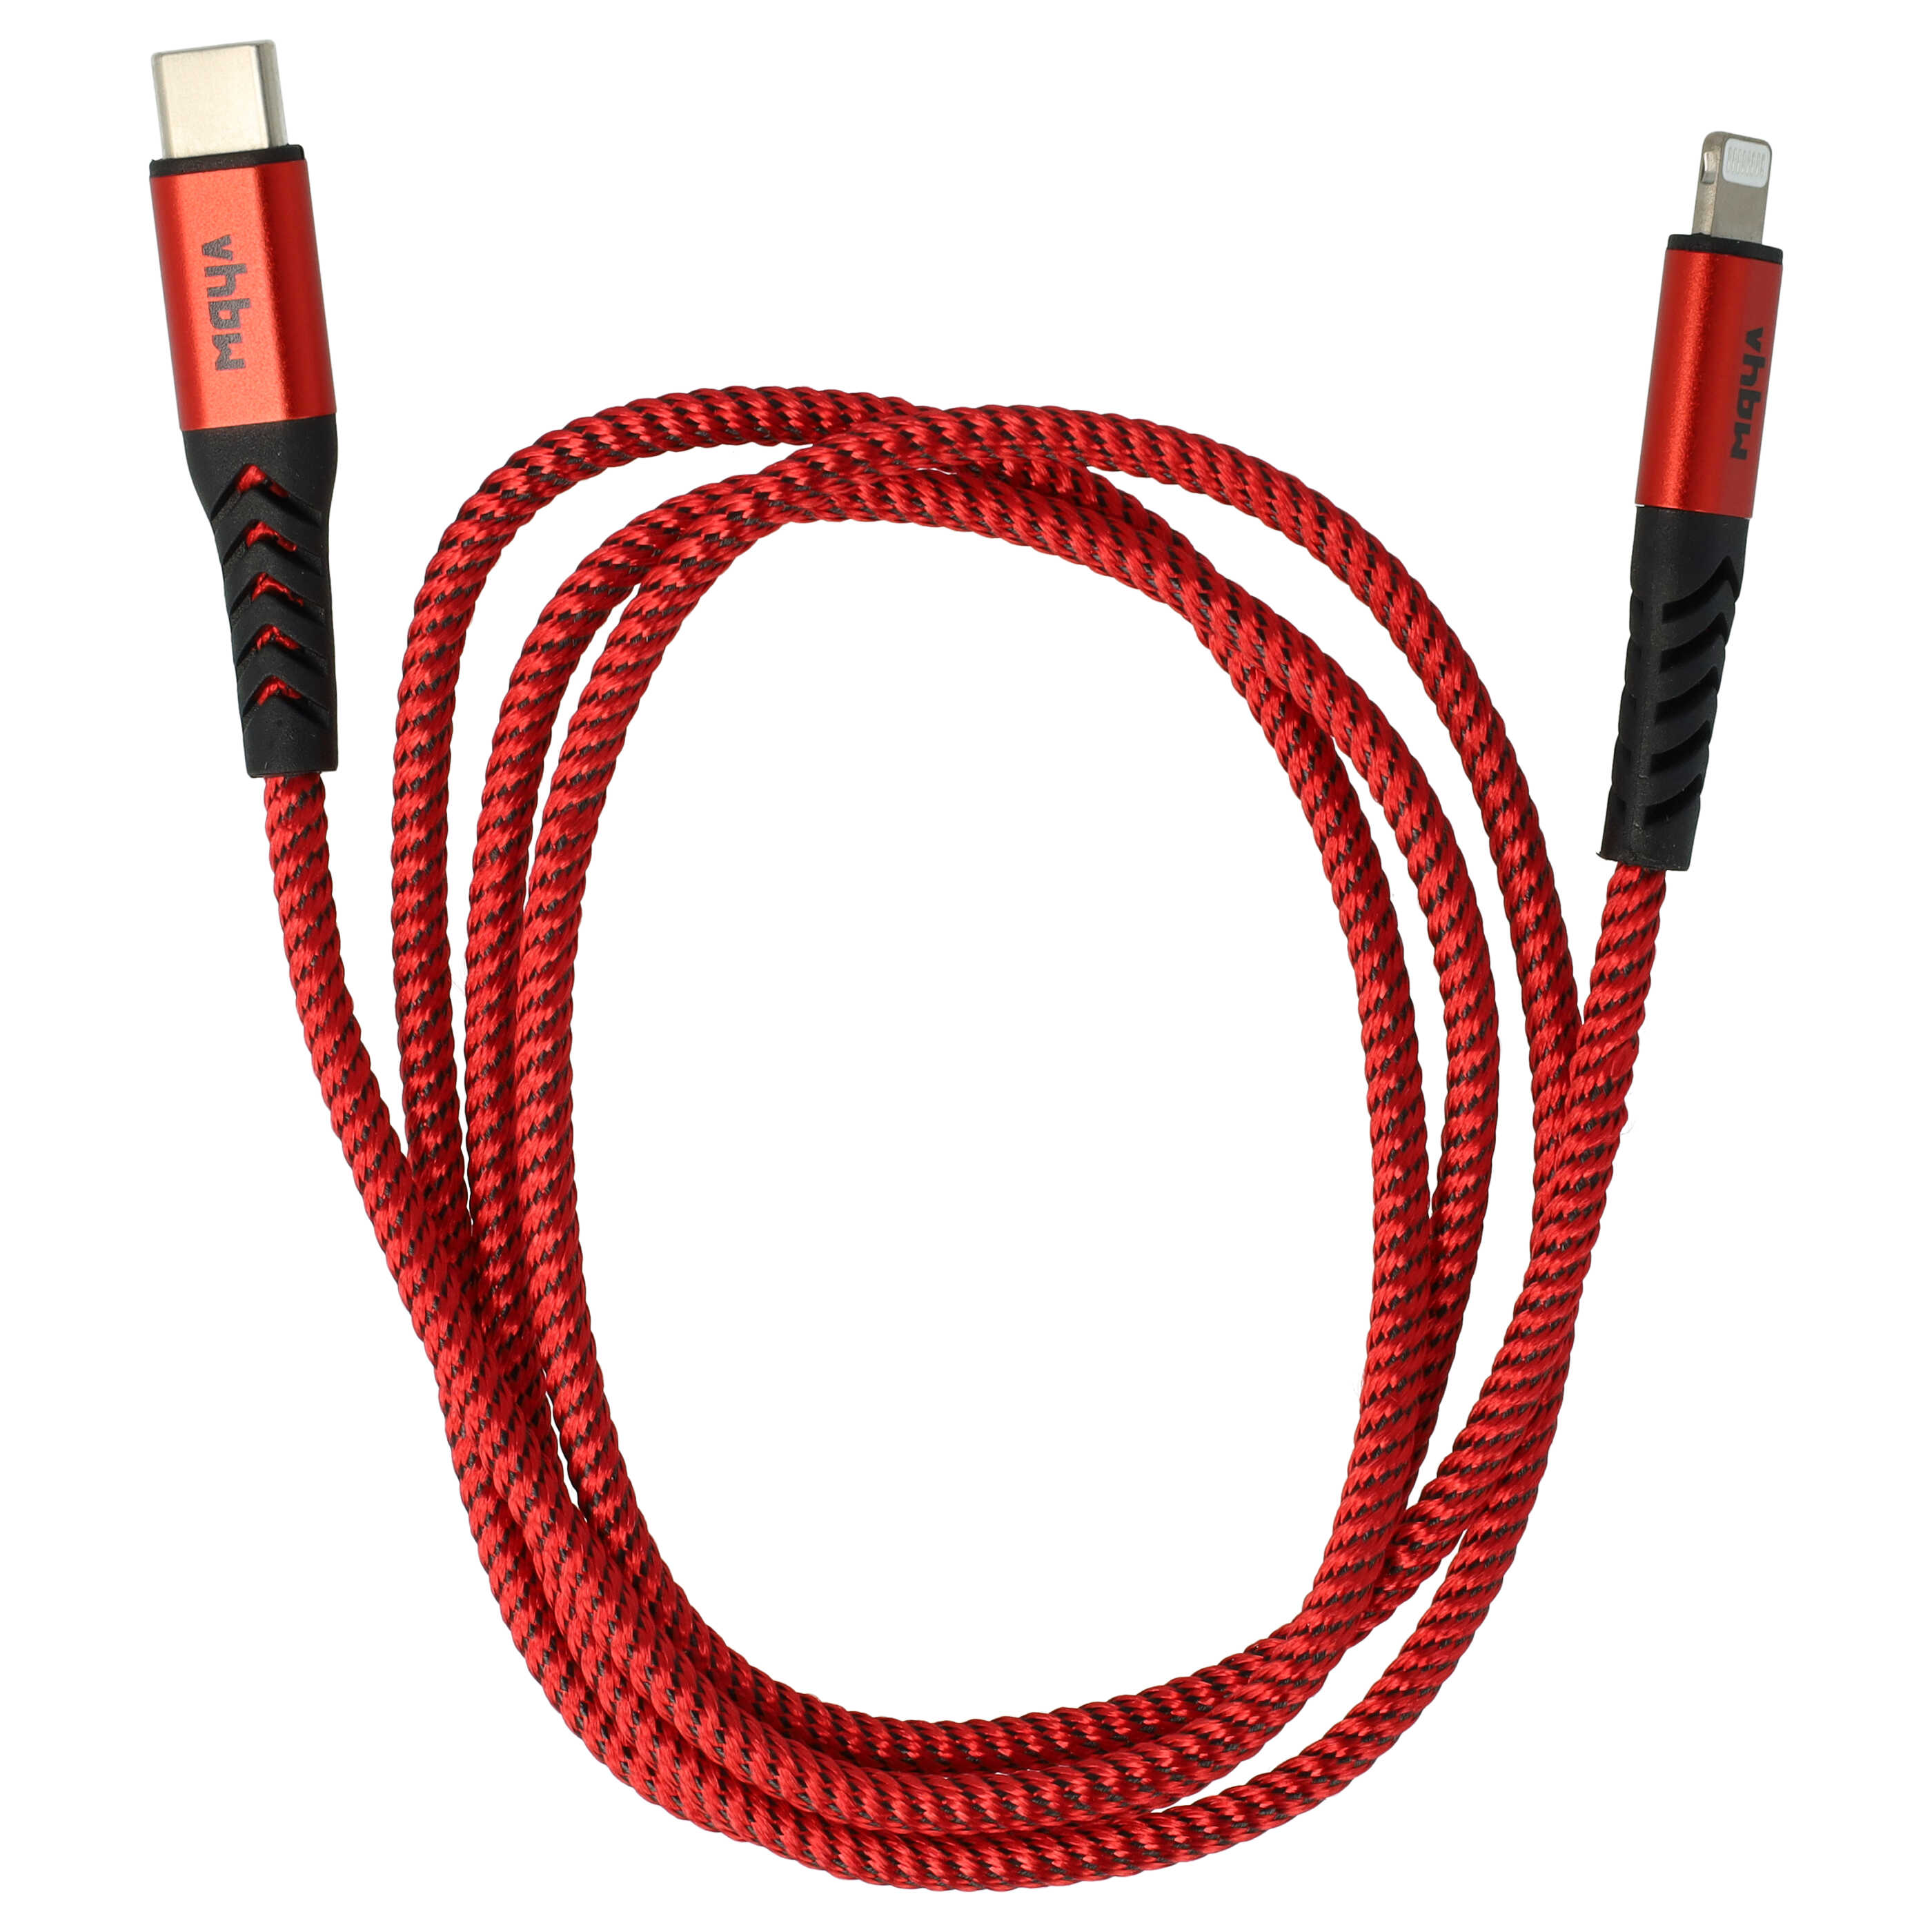 Kabel Lightning USB C, Thunderbolt 3 do urządzeń iOS 1. generacji - czerwony / czarny, 100 cm 